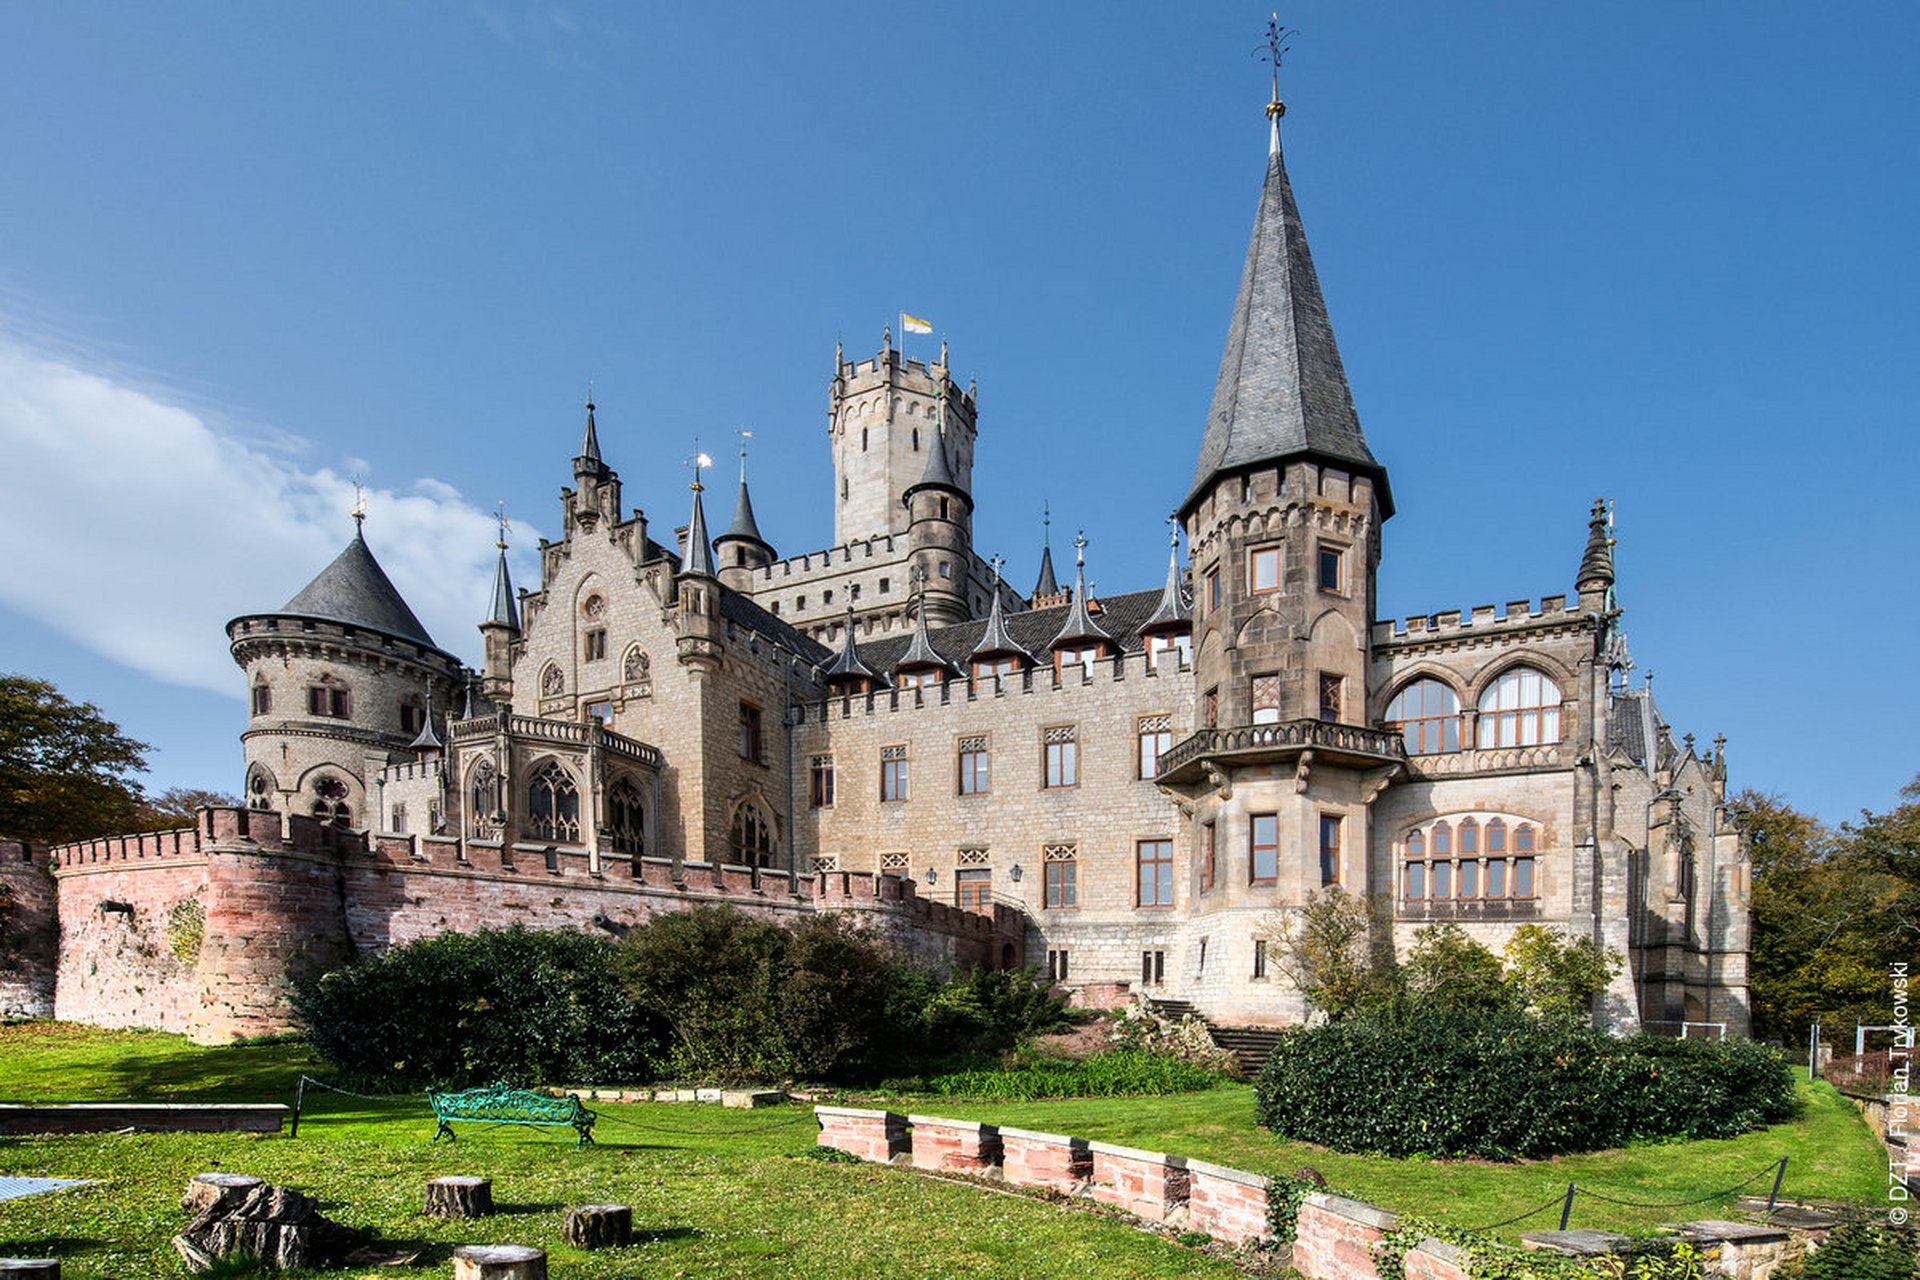 玛丽娅城堡(schloss marienburg)堪称是一座真爱殿堂